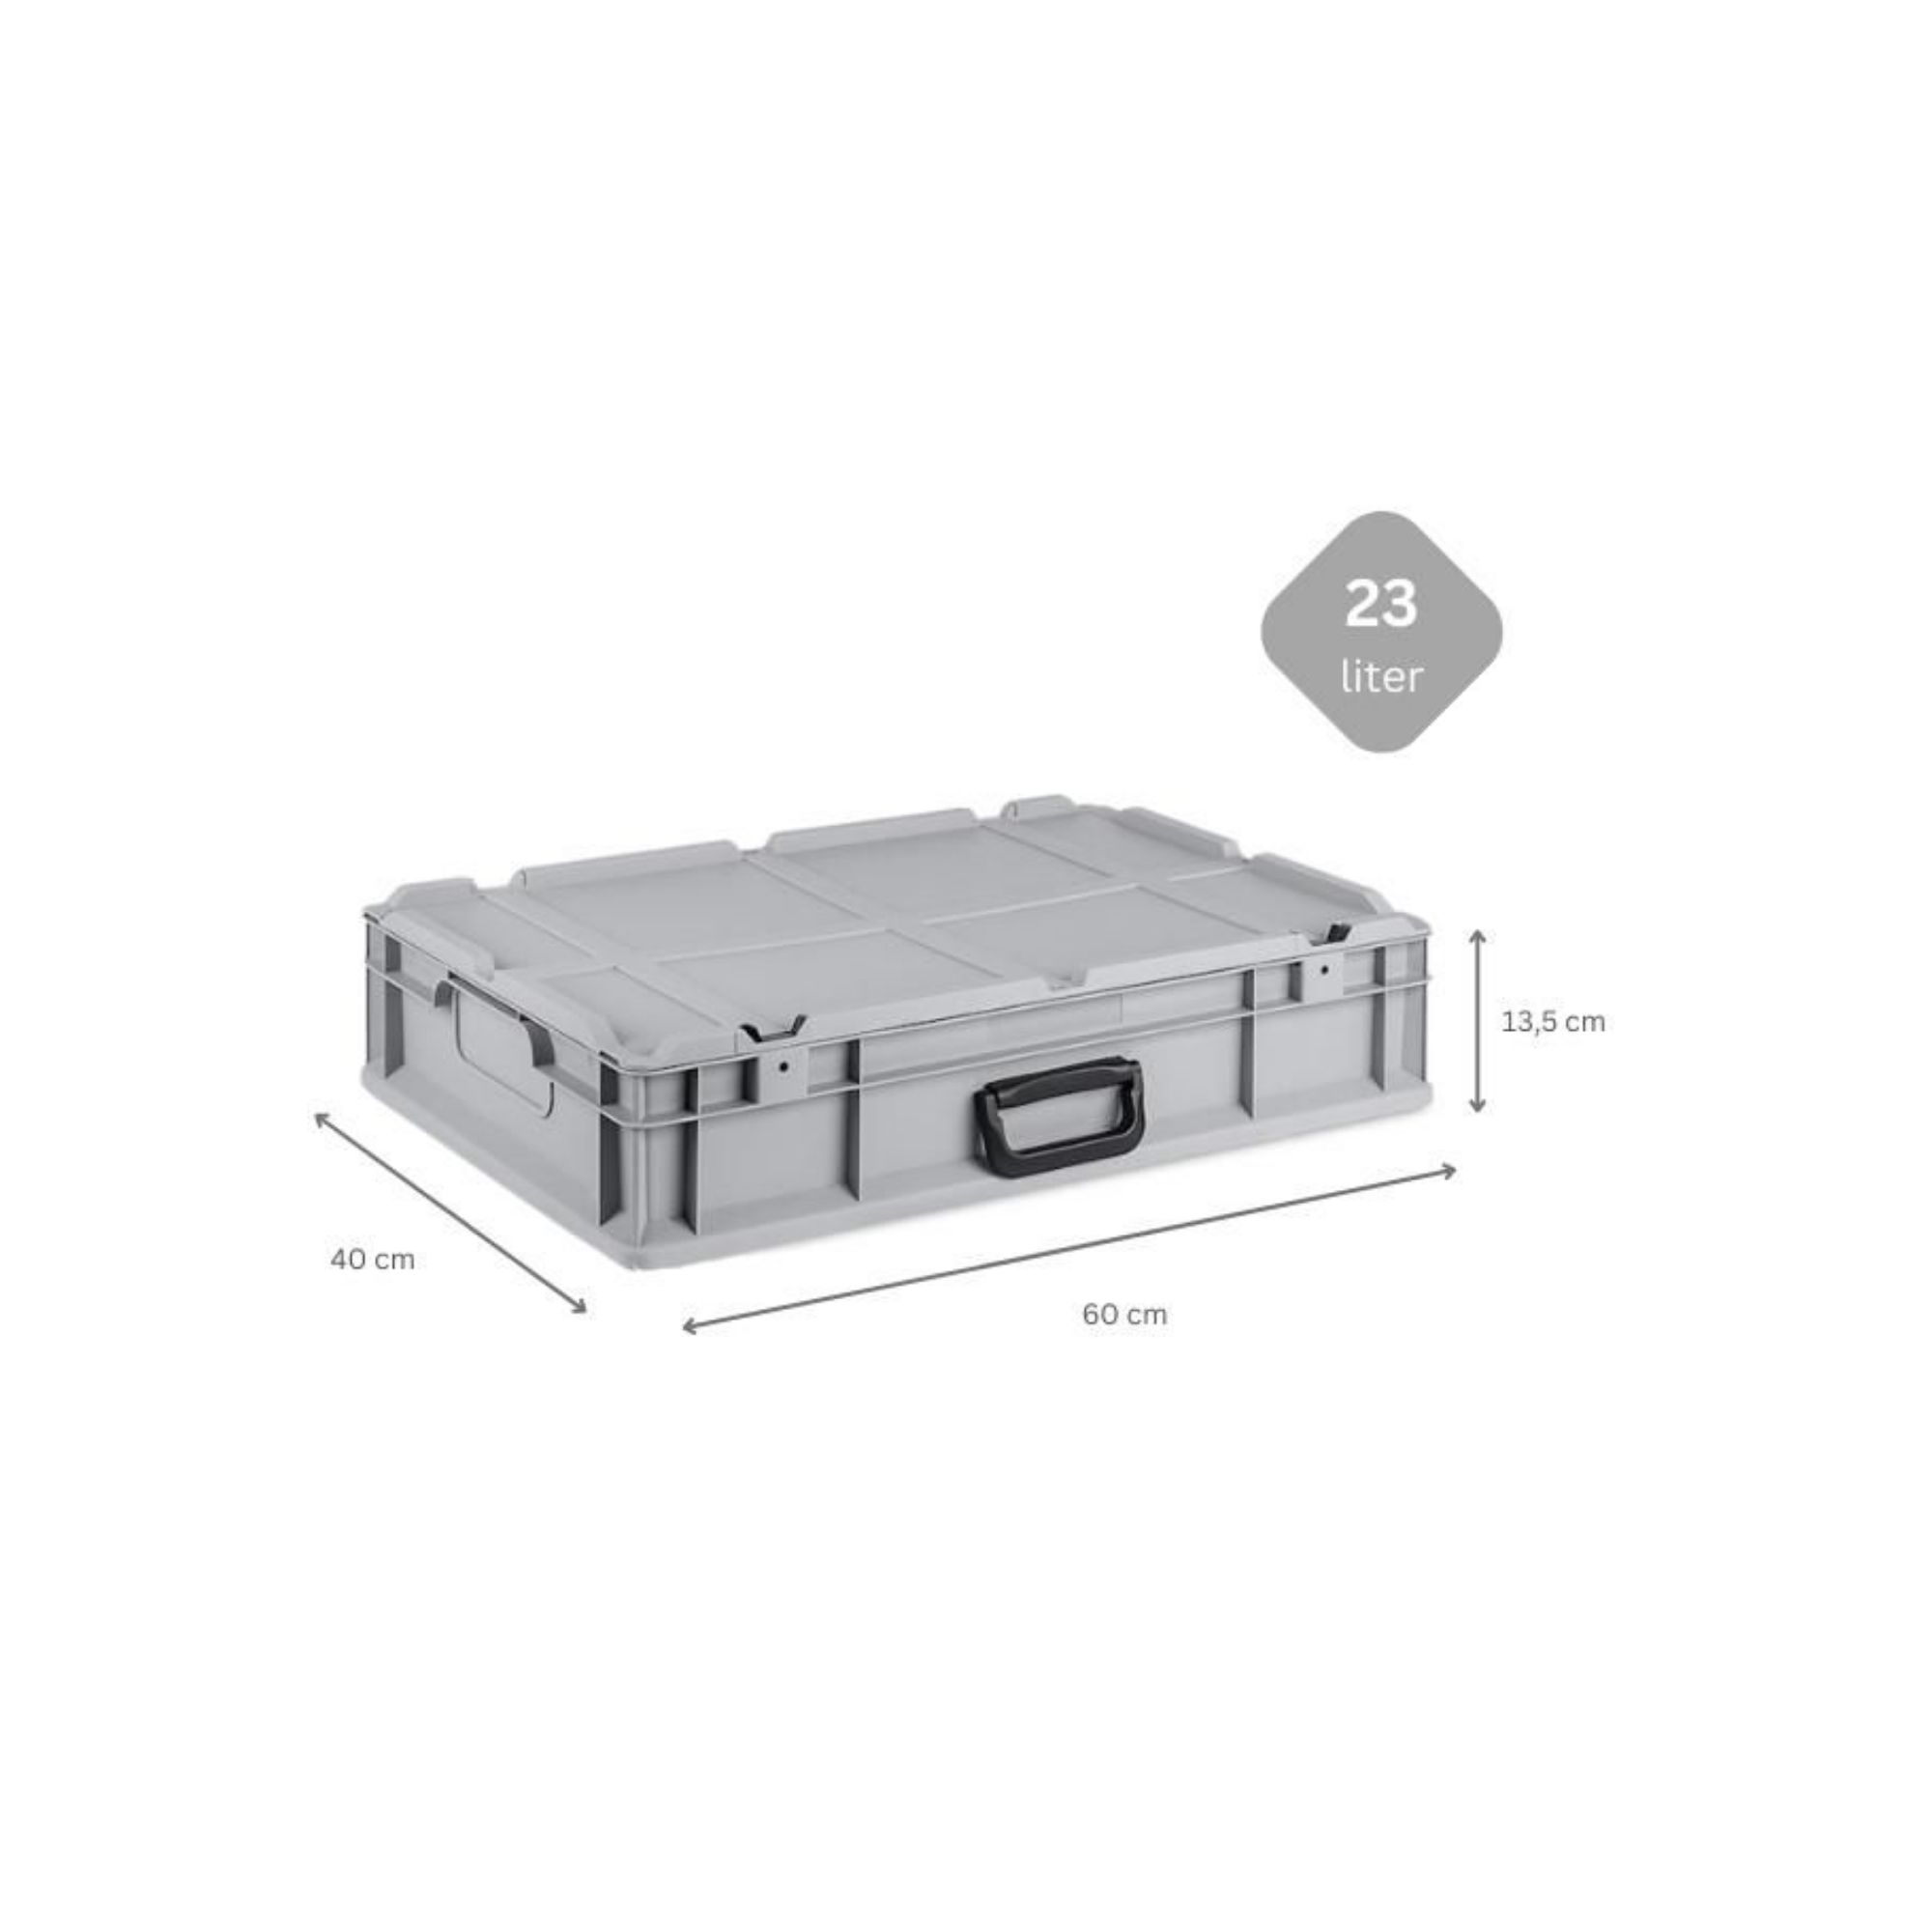 Eurobox NextGen Portable mit Rasterschaumstoff & Schaumstoffeinlage | HxBxT 13,5x40x60cm | 23 Liter | Eurobehälter, Transportbox, Transportbehälter, Stapelbehälter